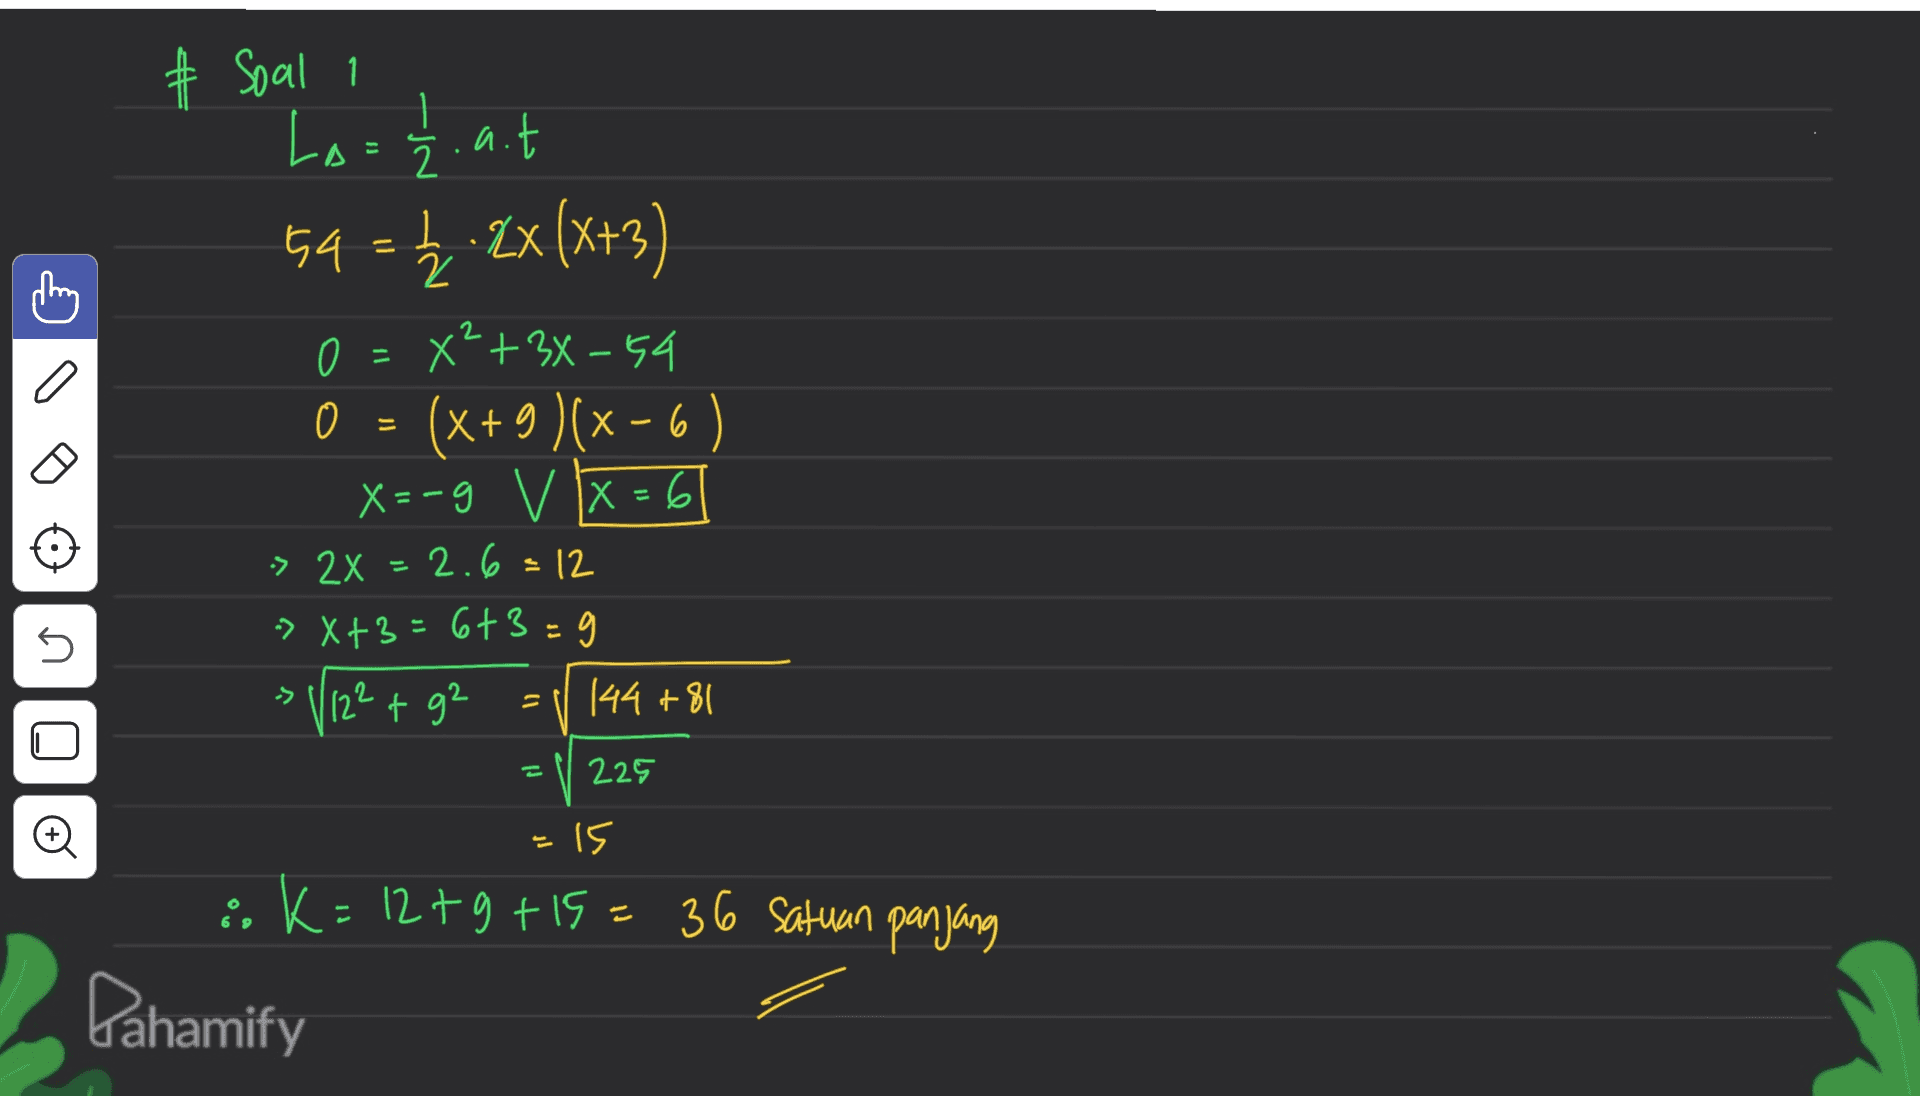 # Soal i La = 12. a.t 54 = £ 2x(x+3) 1, 2XX+3 = 2 o 0 X²+34-54 0 = 0 (x+9 )(x-6) X= X=-9 V X = 6 X > 2x = 2.6 = 12 -> X+3=6+3=9 * V12+ + ga 12² g2 144 +81 는 s -> 2 225 -15 36 satuan panjang & ; k=12tg +15= 36 satuan Pahamify 